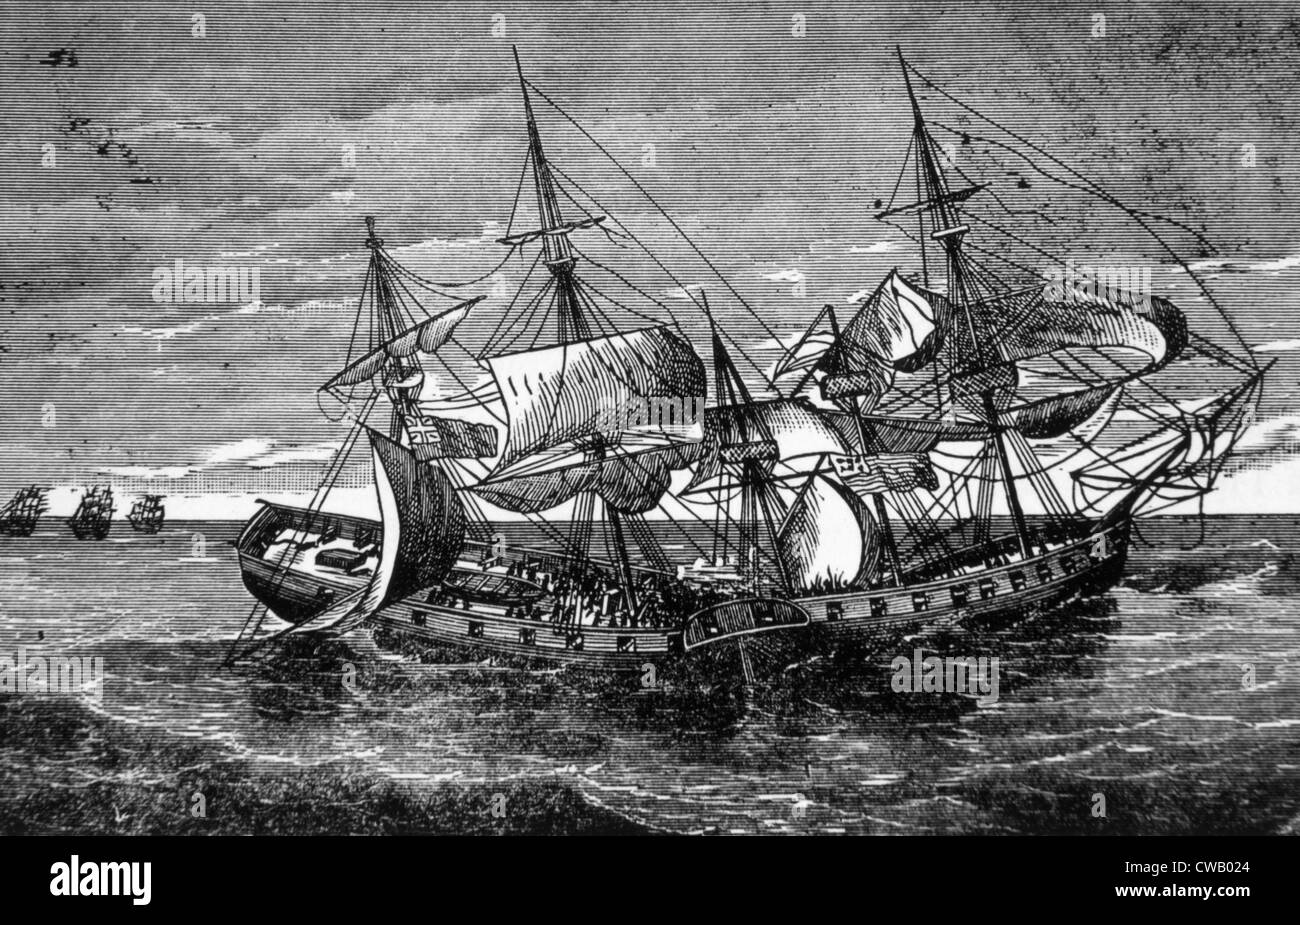 La guerra de 1812, el buque norteamericano Wasp en combate con el buque británico que retozan, 1813 Foto de stock